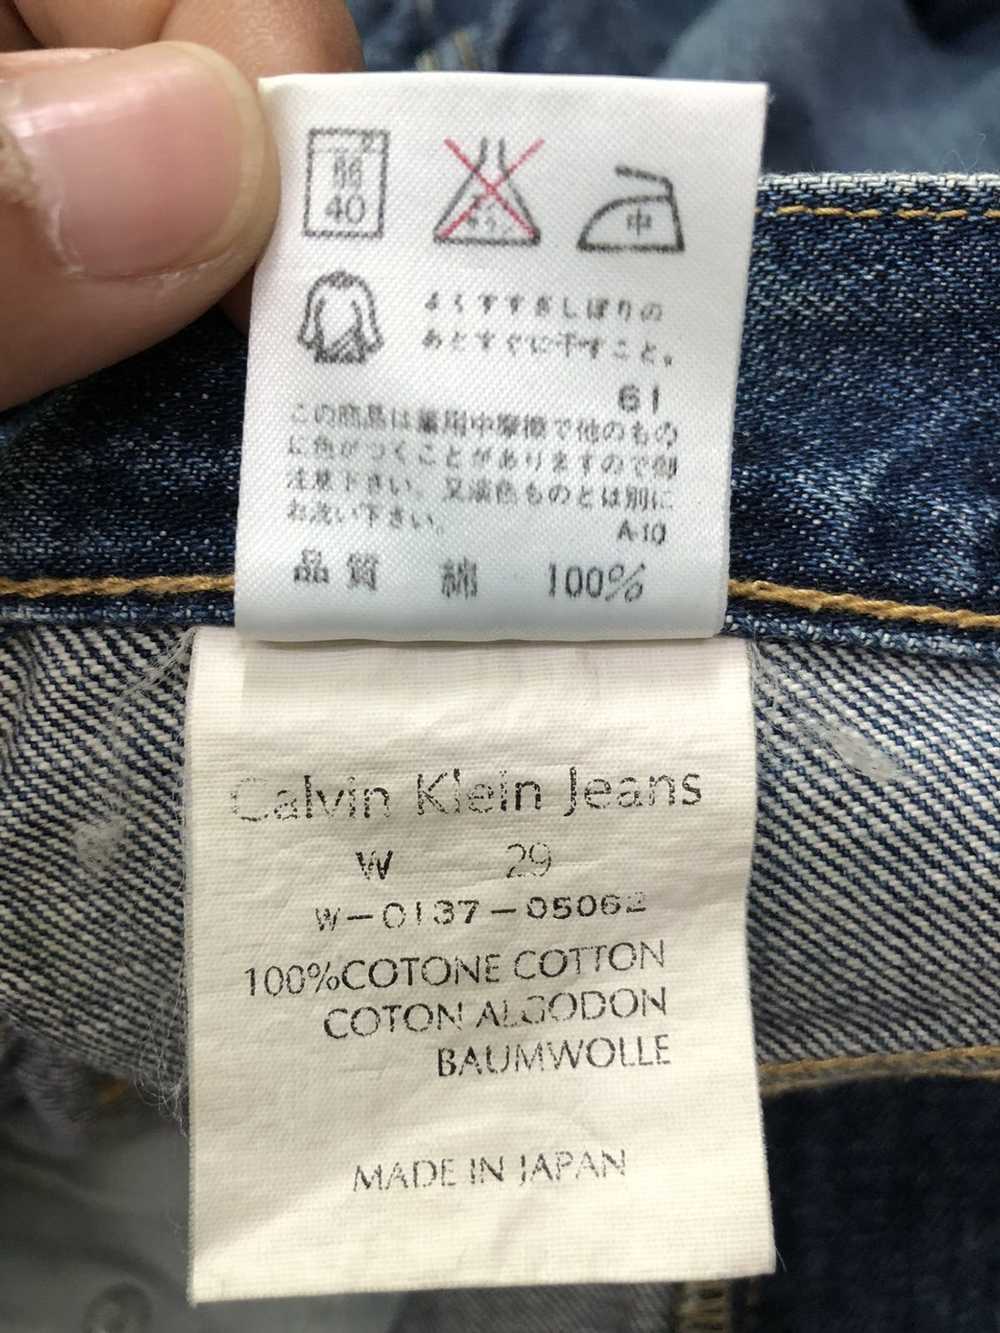 Calvin Klein Calvin Klein denim jeans - image 4